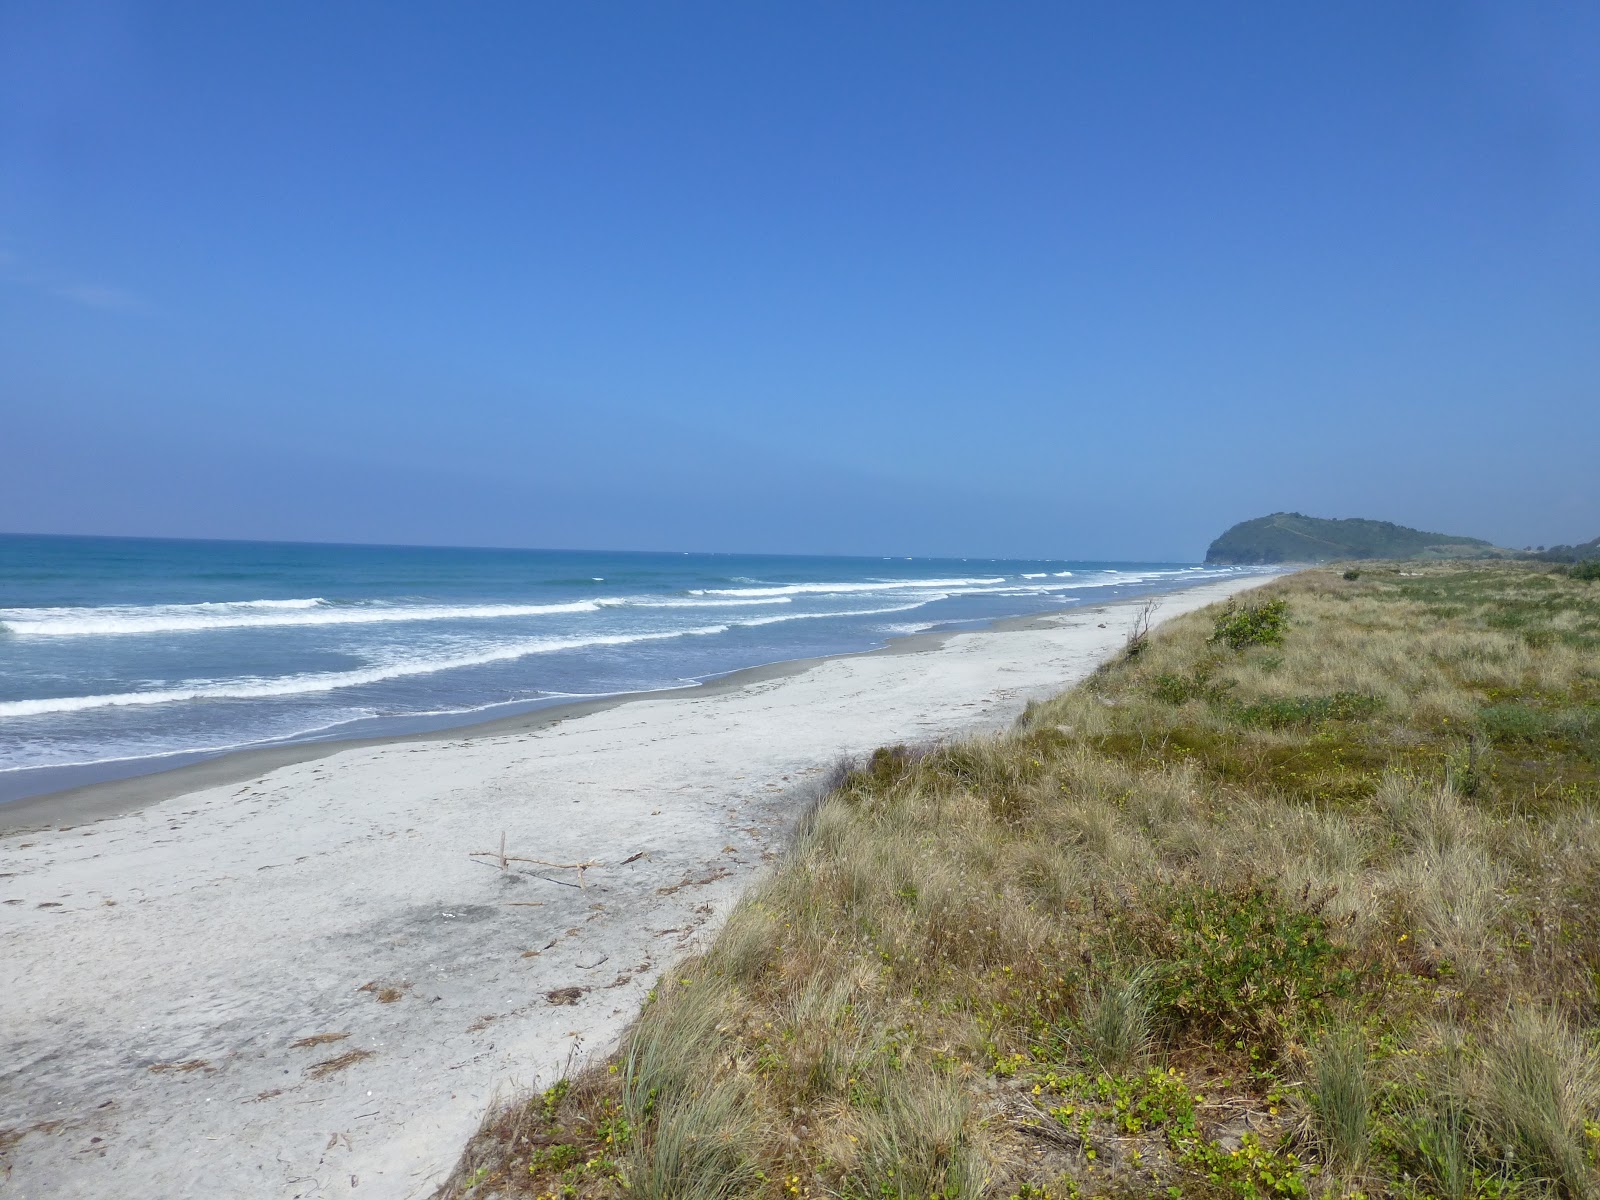 Fotografie cu Ocean Beach - locul popular printre cunoscătorii de relaxare